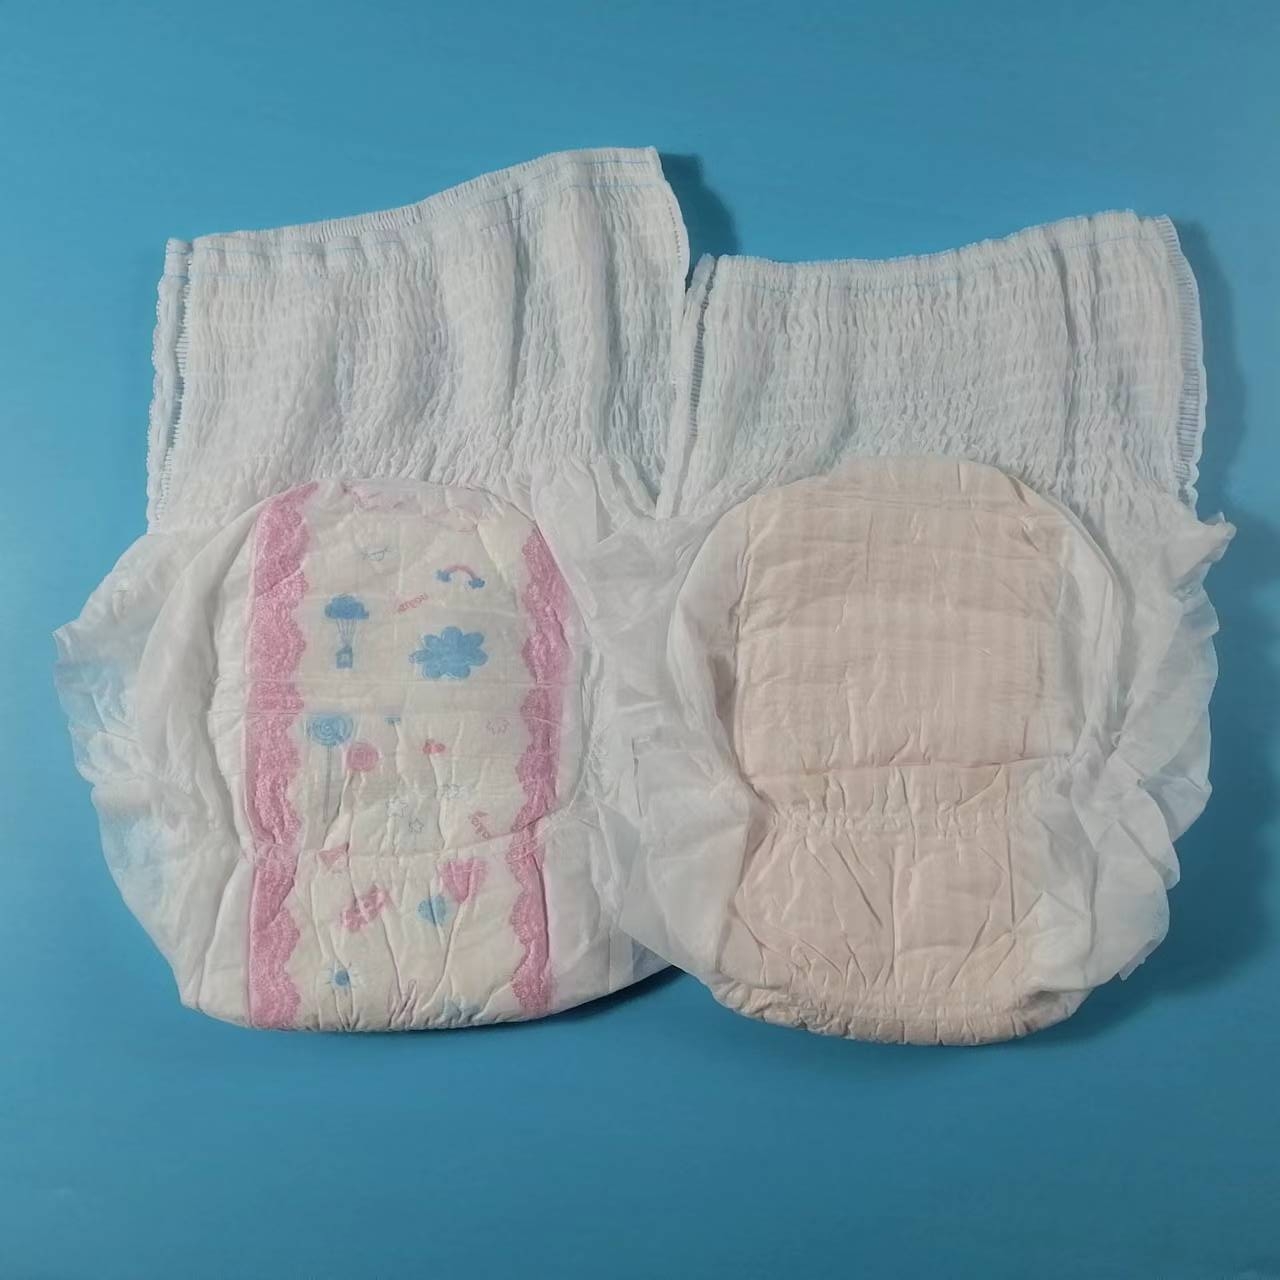 Preço baixo melhor qualidade calças menstruais descartáveis ​​guardanapo sanitário tipo calcinha com superfície macia e saudável Imagem em destaque